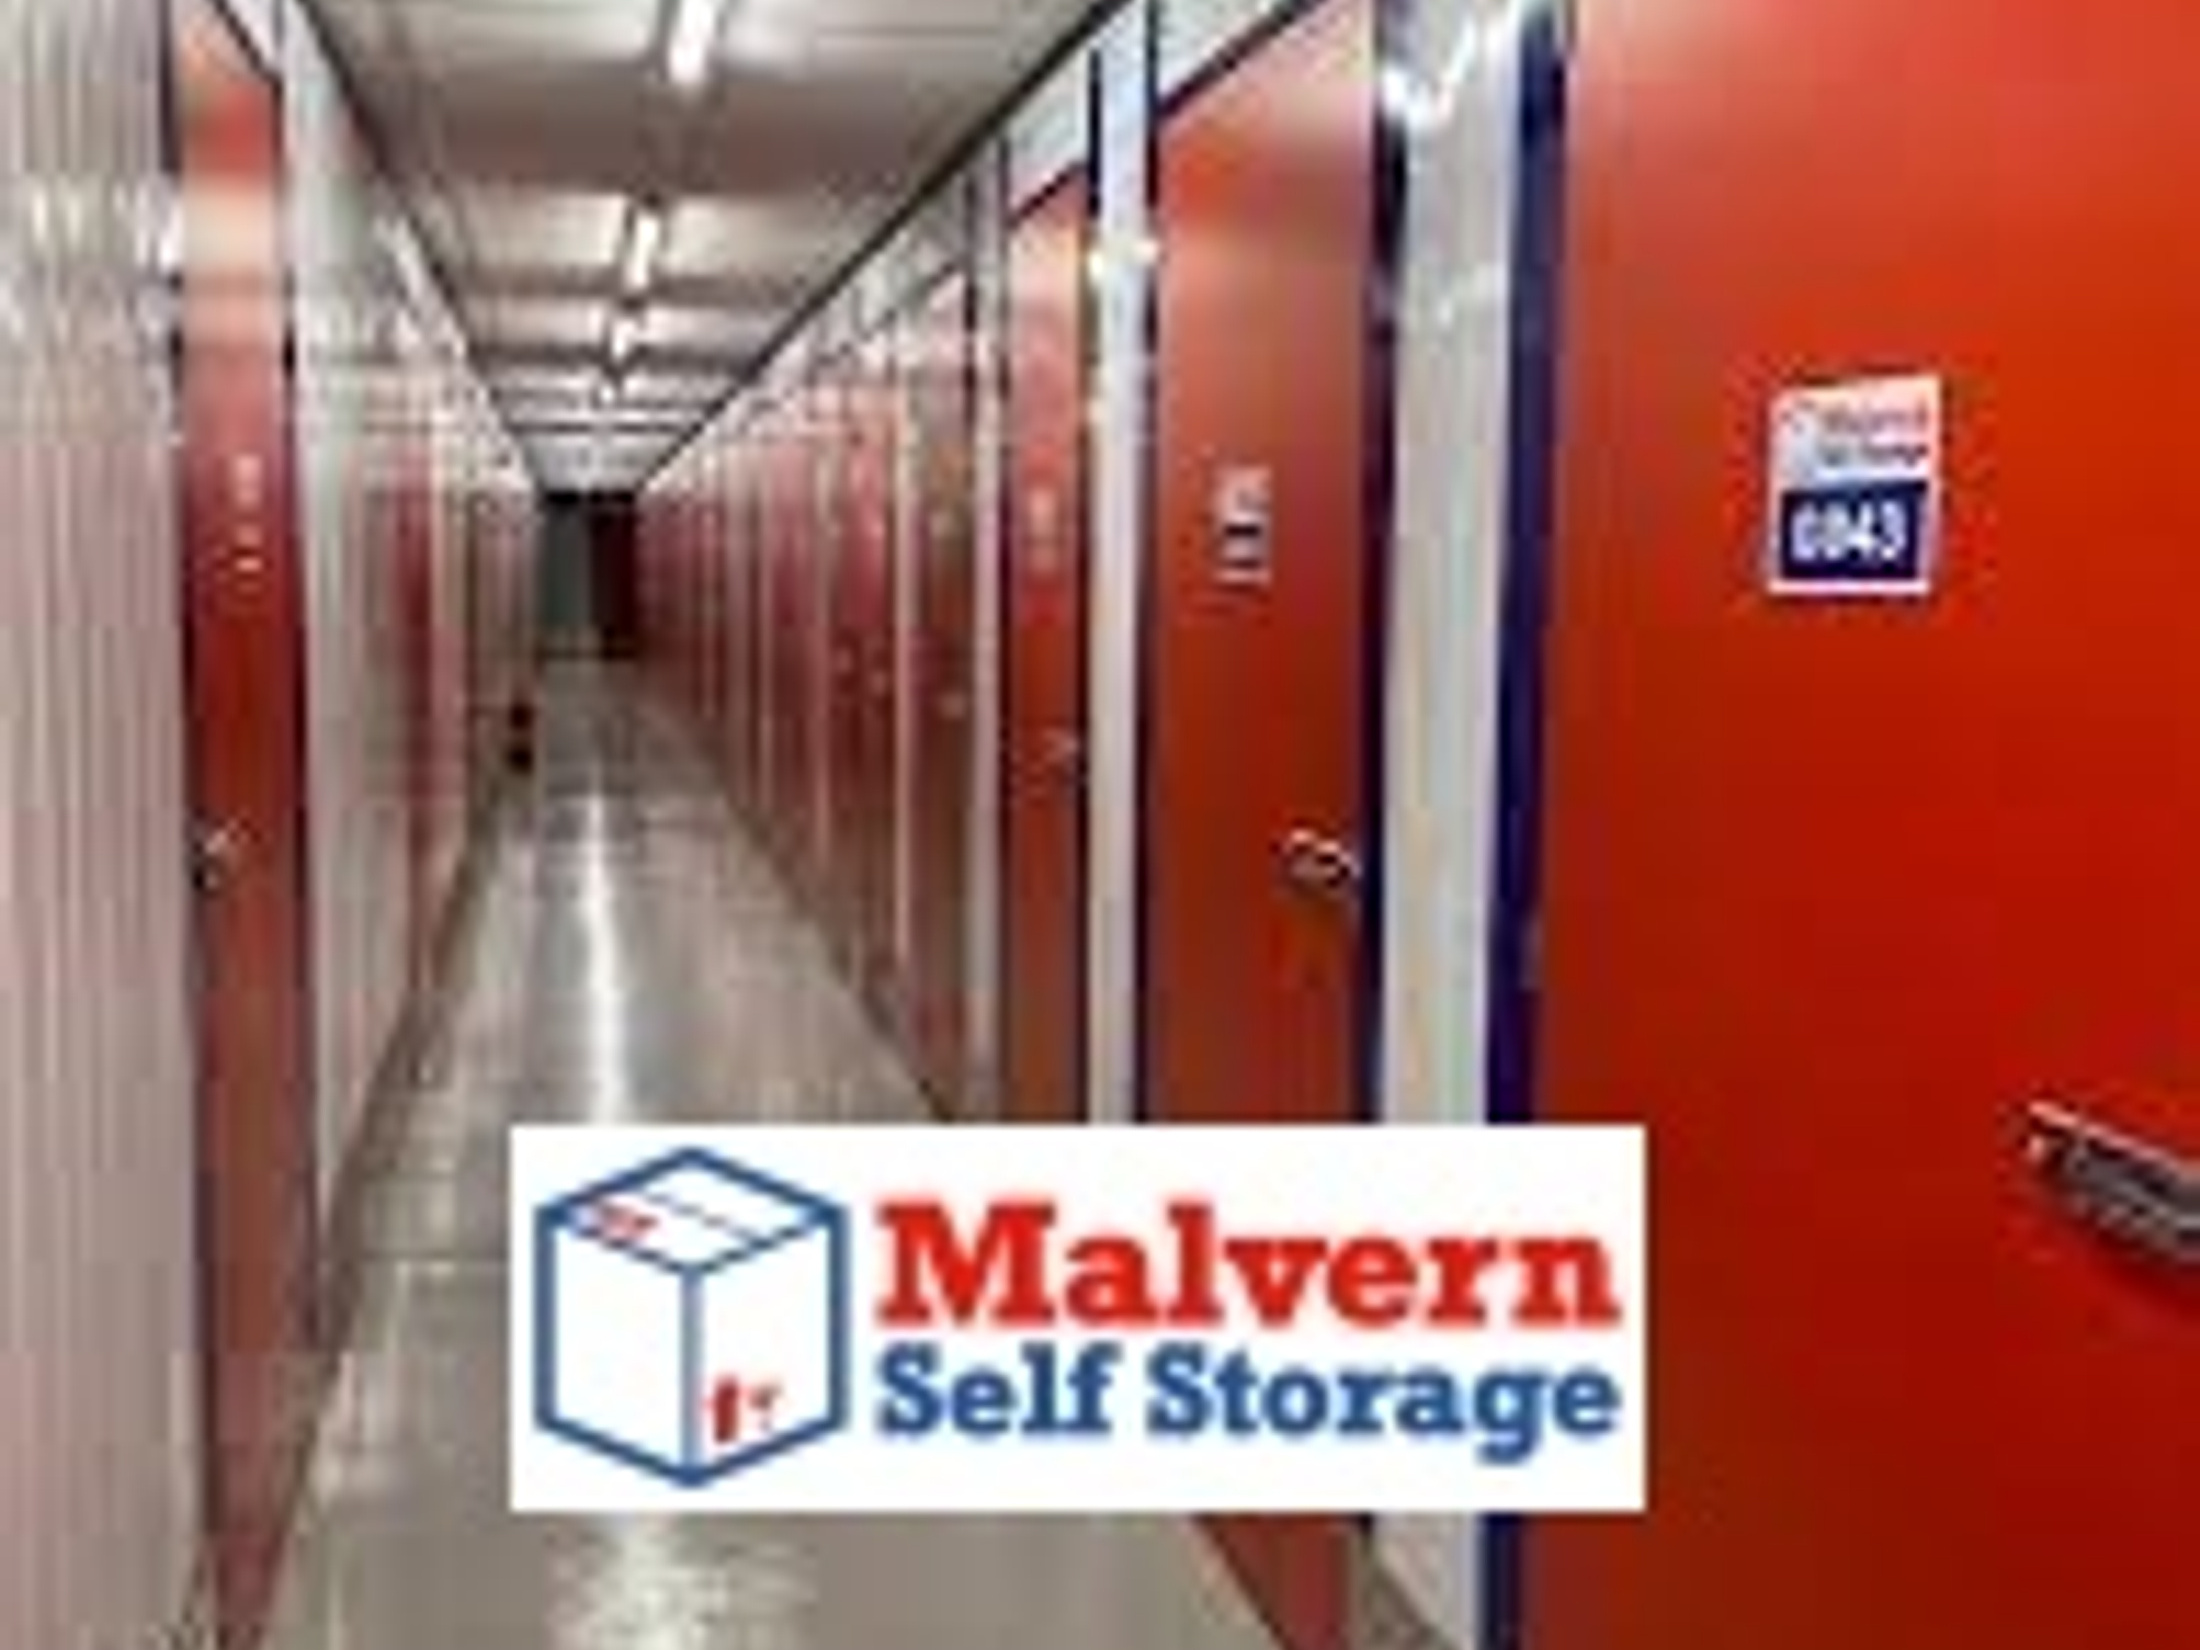 Malvern self storage.jpg